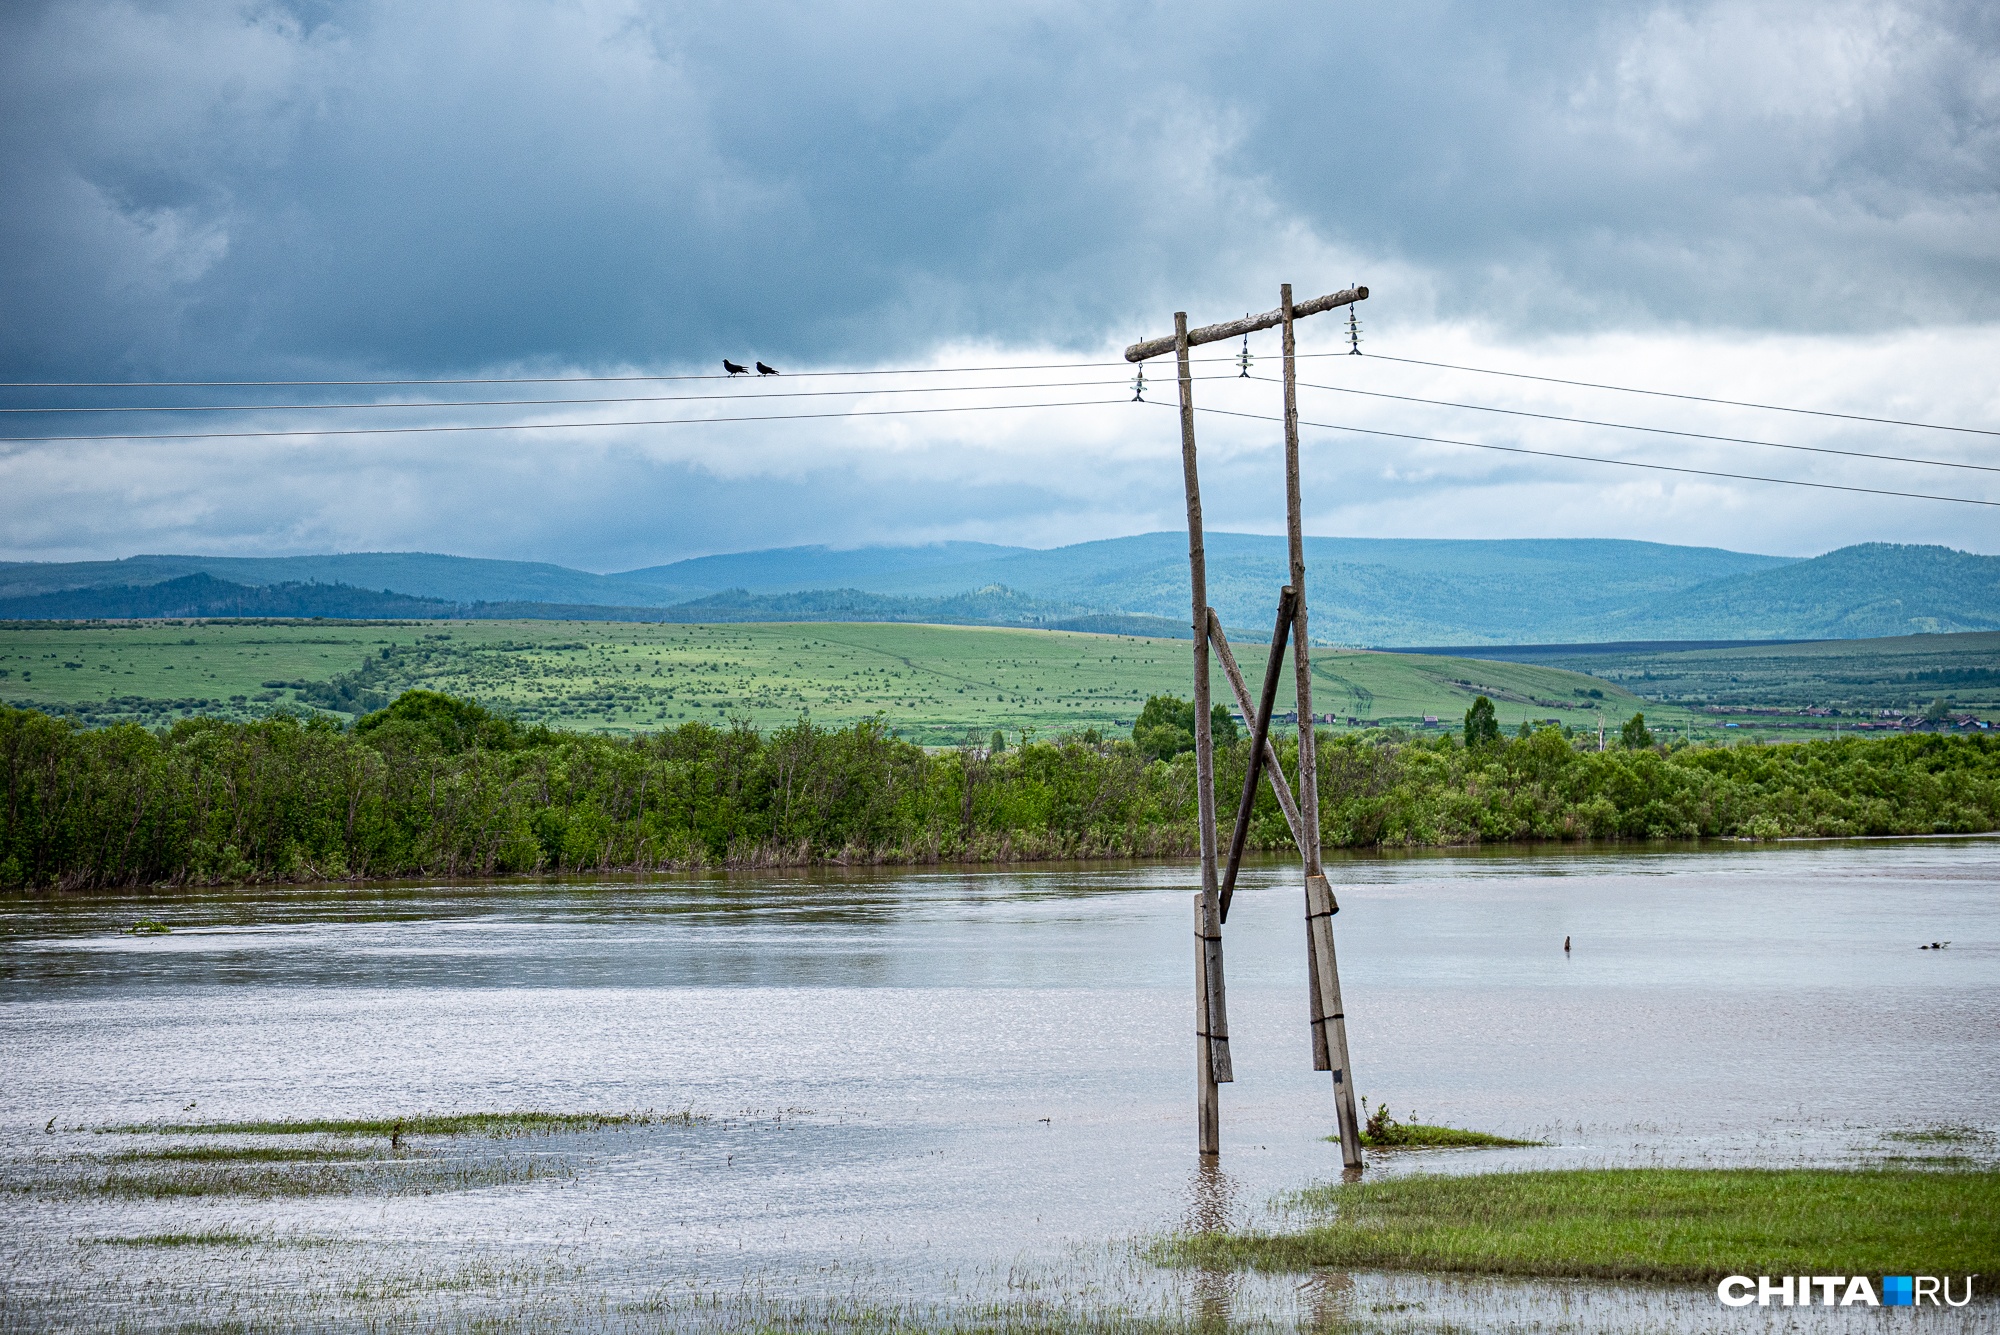 Уровень в реках нескольких районов продолжал расти. Вода размывала дороги у населенных пунктов, а жителей Могочинского района вынудила эвакуироваться, так как началось подтопление дворов